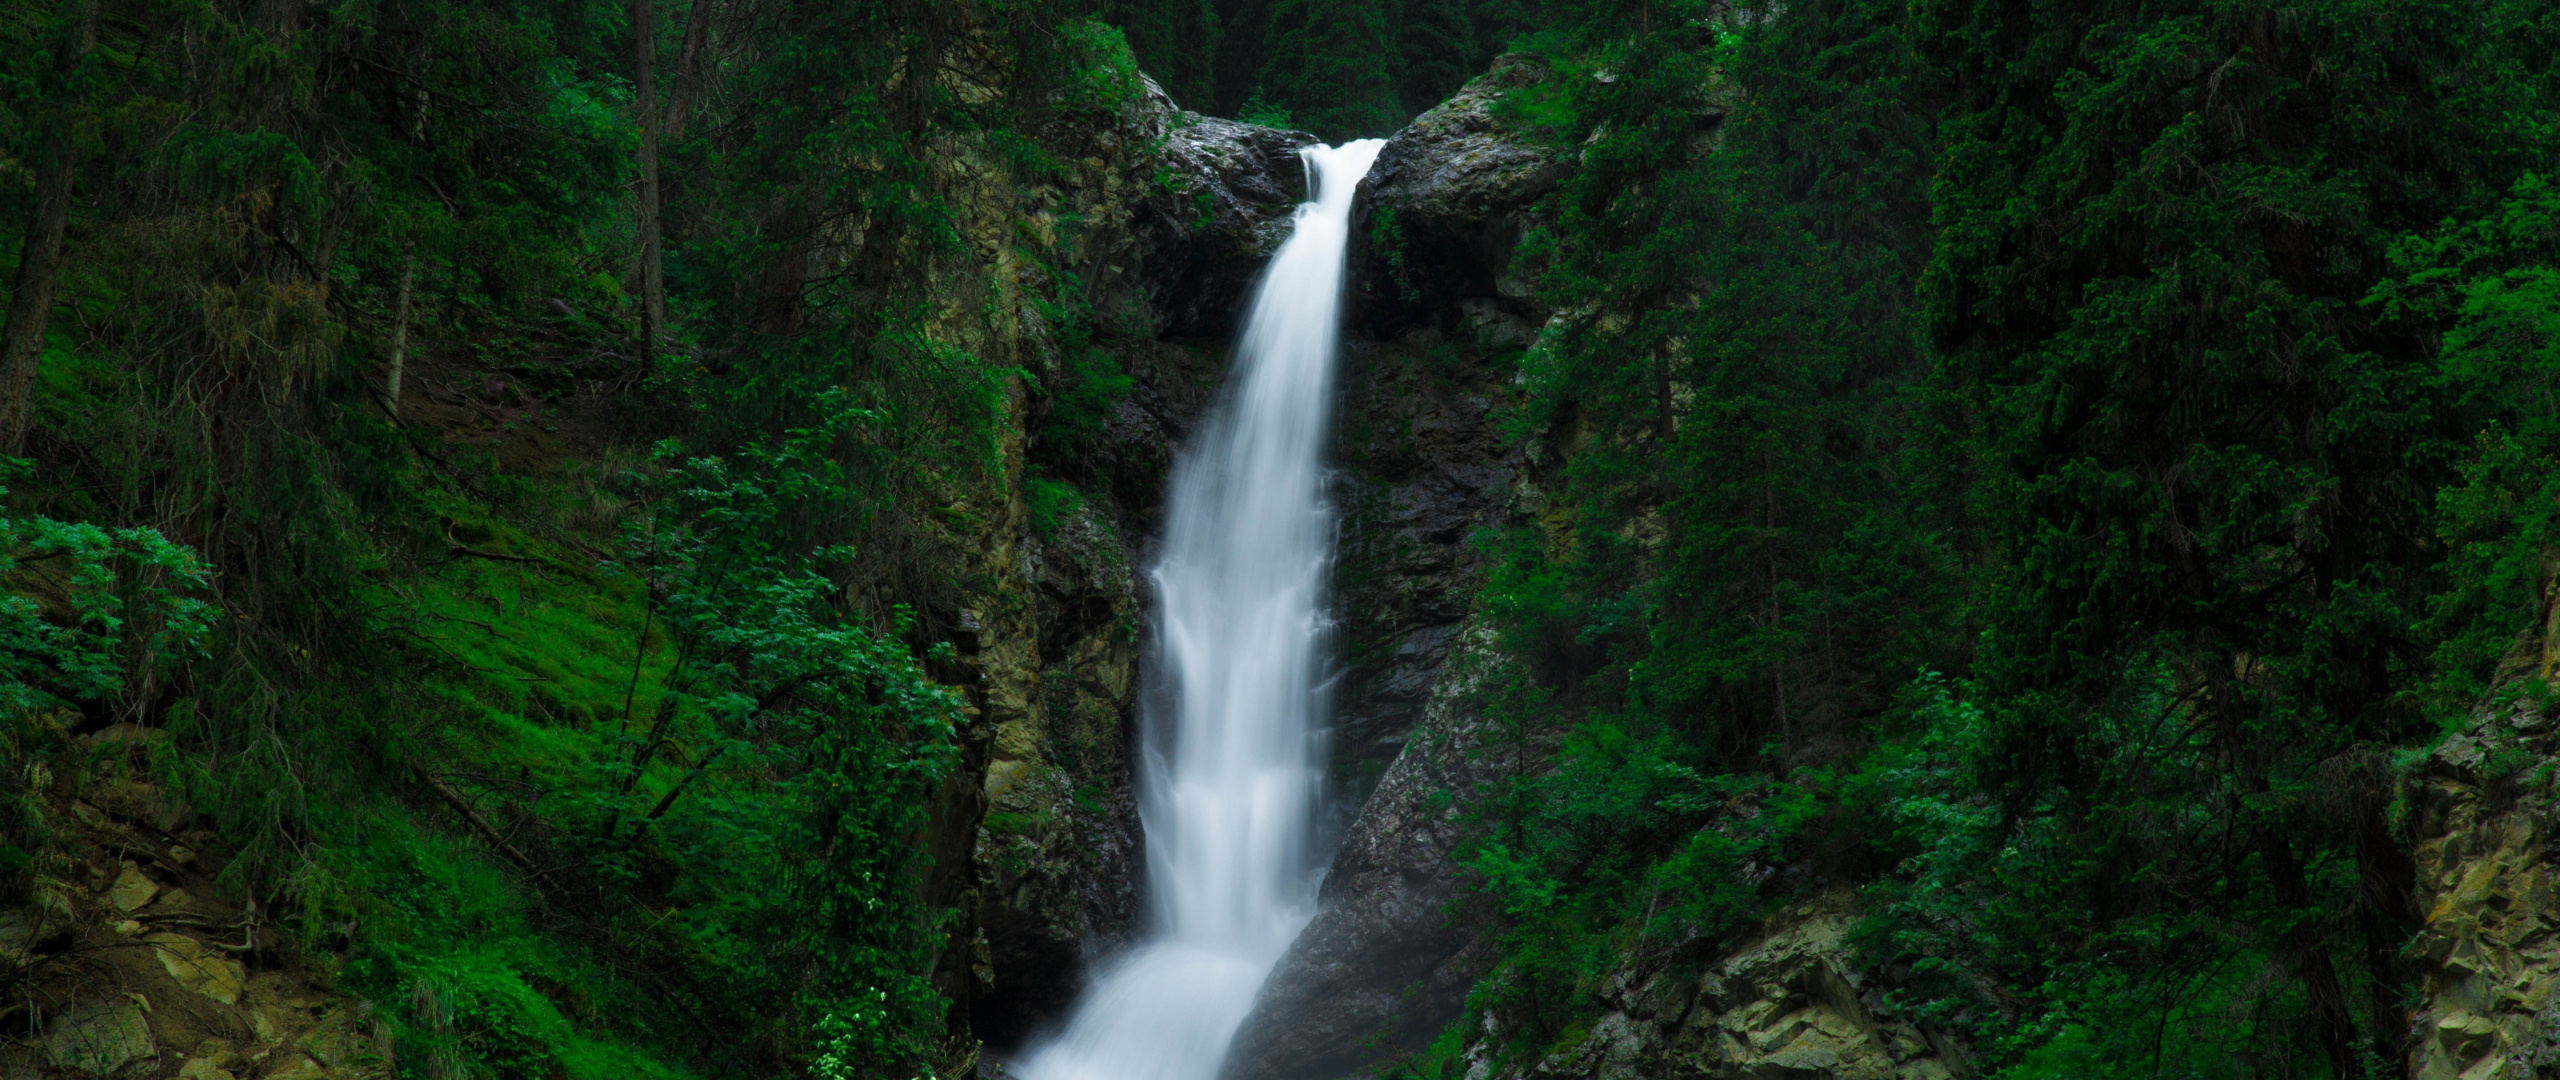 Green Forest, Waterfall, Nature, Wallpaper, 2560x1080 Dual Screen Desktop